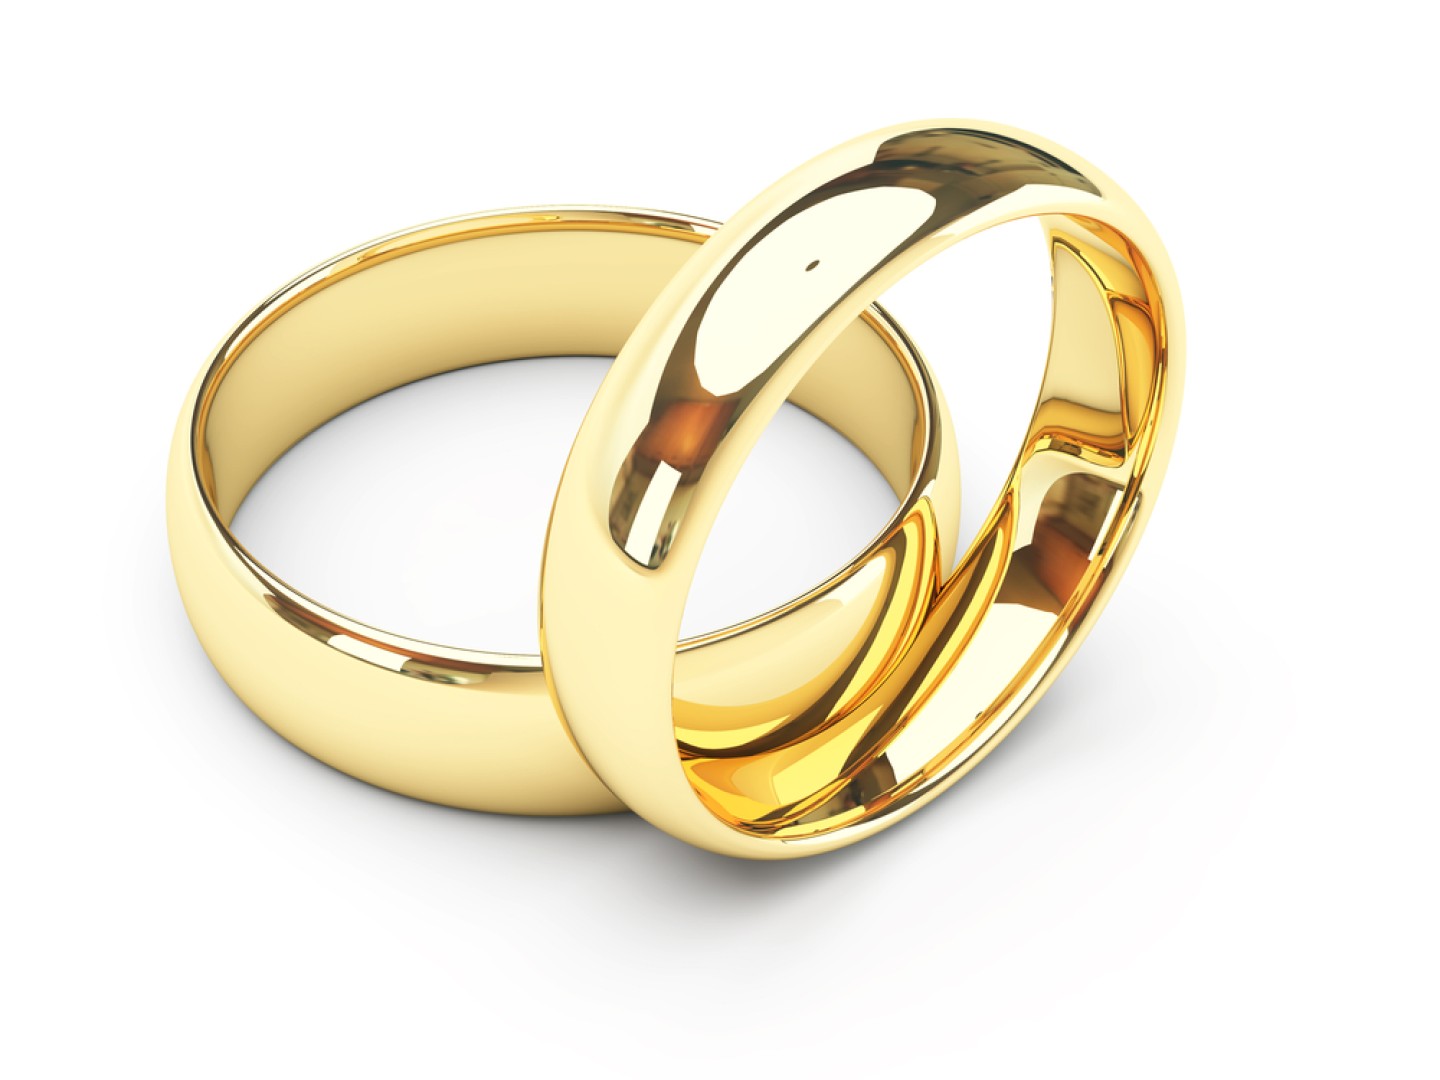 Široký výběr svatebních doplňků. Šperky na svatbu a bižuterii najdete na Bridee. Náušnice, sponky do vlasů, náhrdelníky nebo manžetové knoflíky a ještě víc.